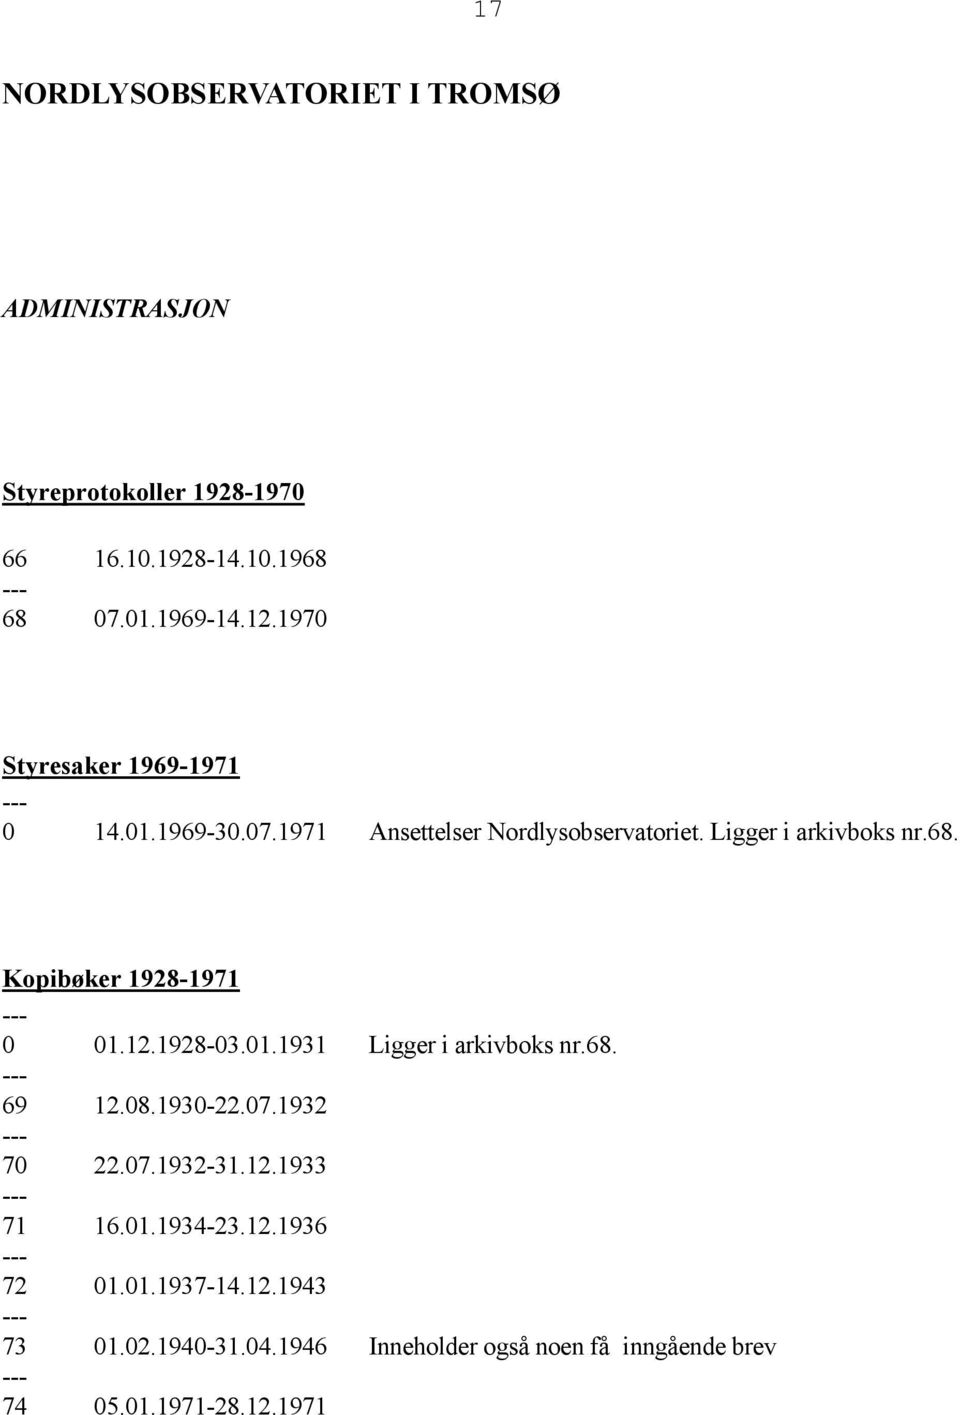 Kopibøker 1928-1971 0 01.12.1928-03.01.1931 Ligger i arkivboks nr.68. 69 12.08.1930-22.07.1932 70 22.07.1932-31.12.1933 71 16.